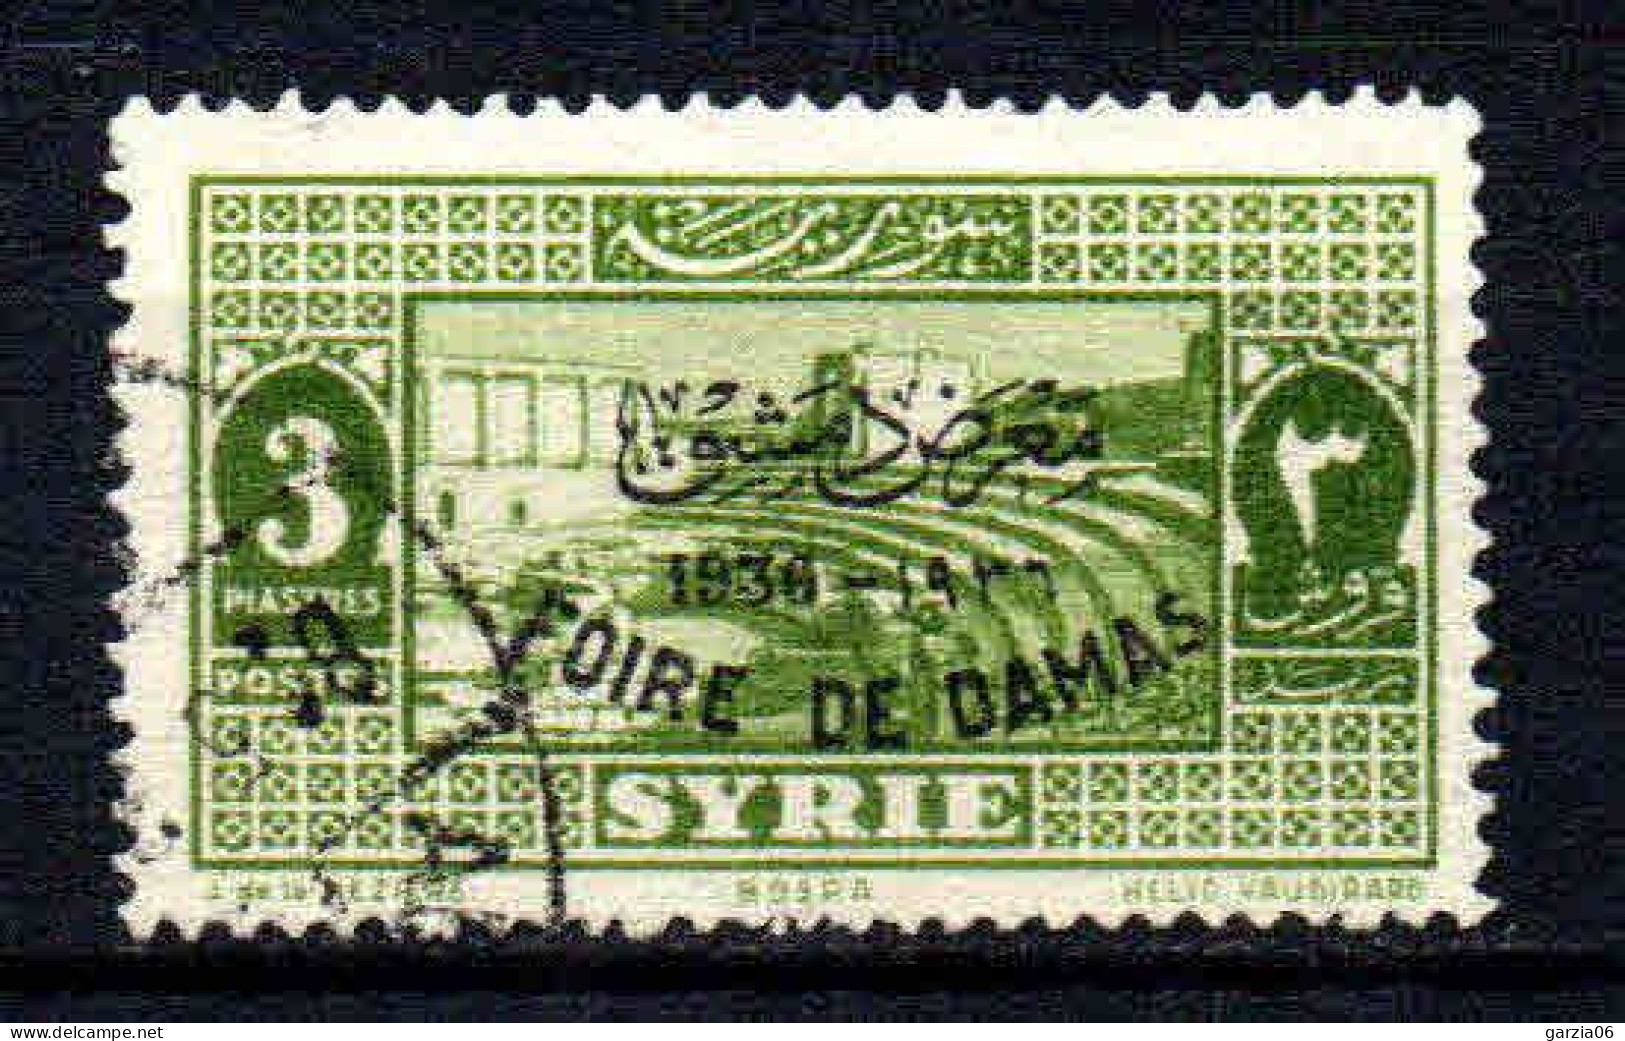 Syrie  - 1936 -  Foire De Damas  - N° 239D -  Oblit - Used - Oblitérés